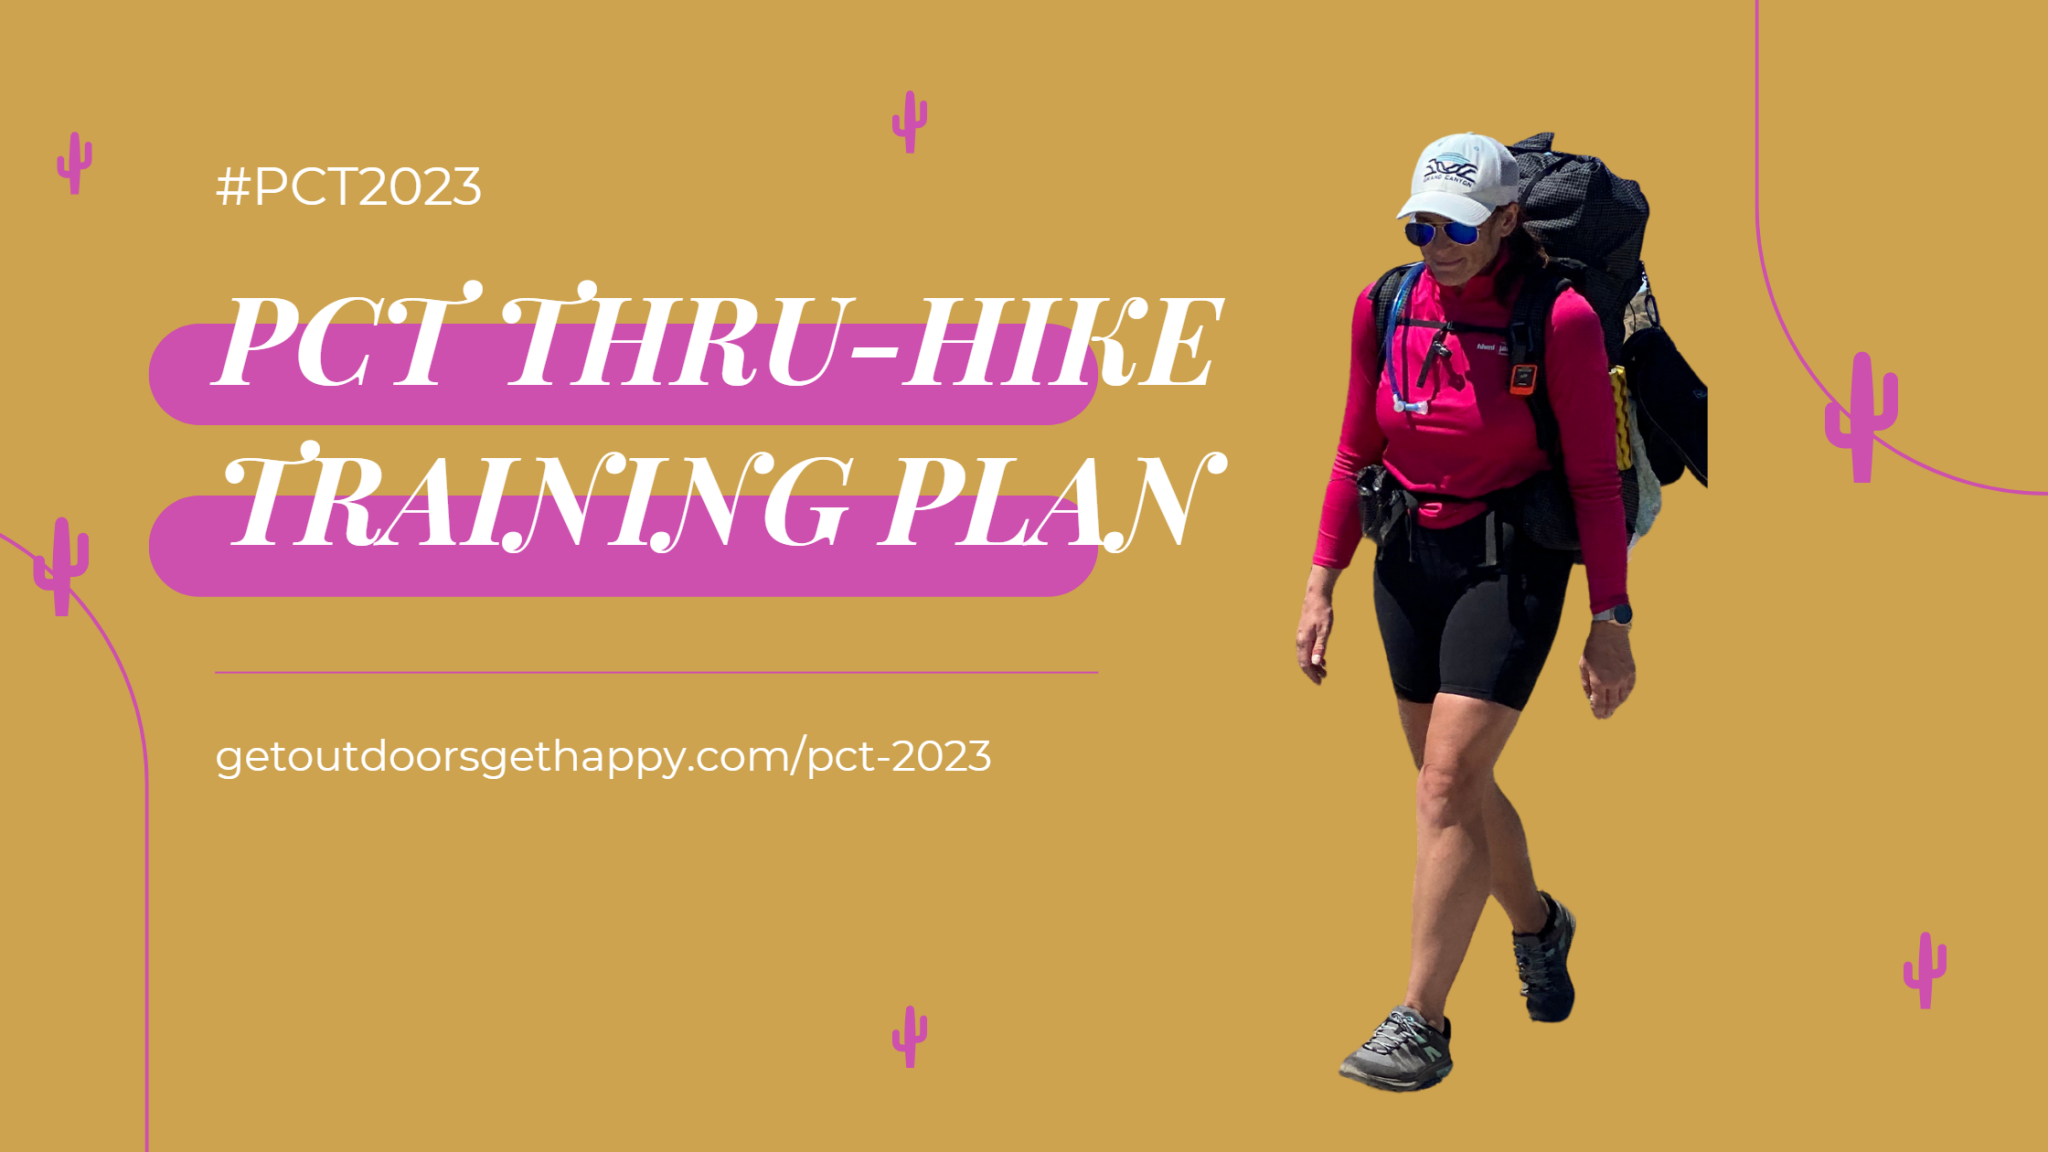 PCT Thru-hike Training Plan